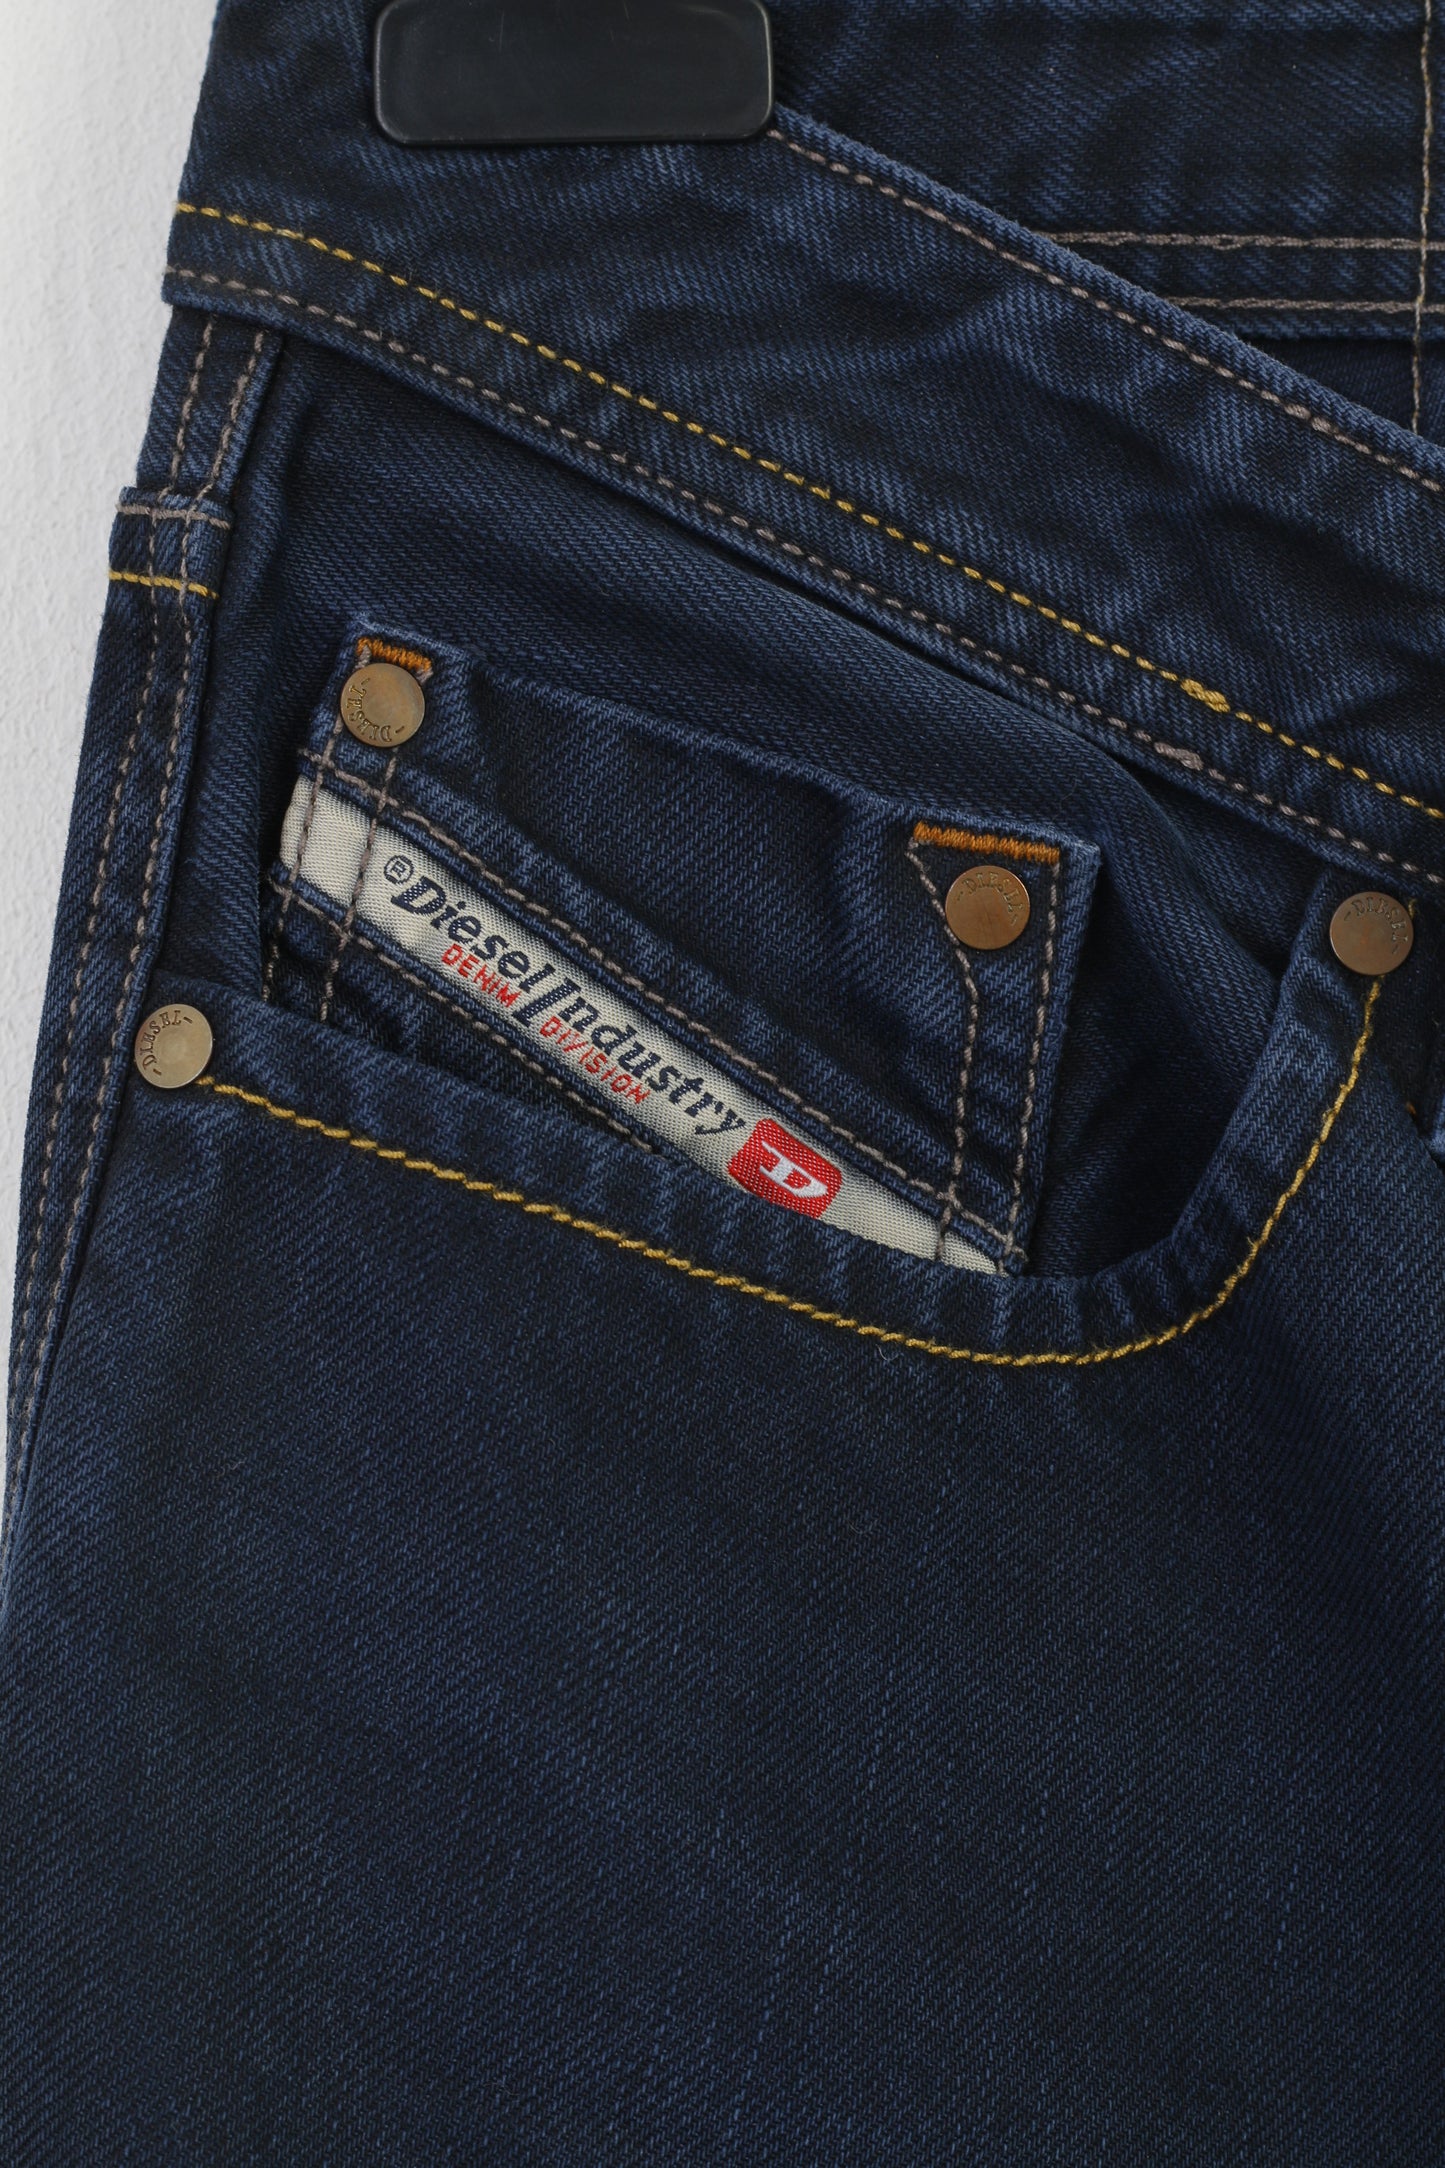 Diesel Industry – pantalon en jean Vintage pour hommes, 30 pantalons en coton bleu marine, bas Larkee